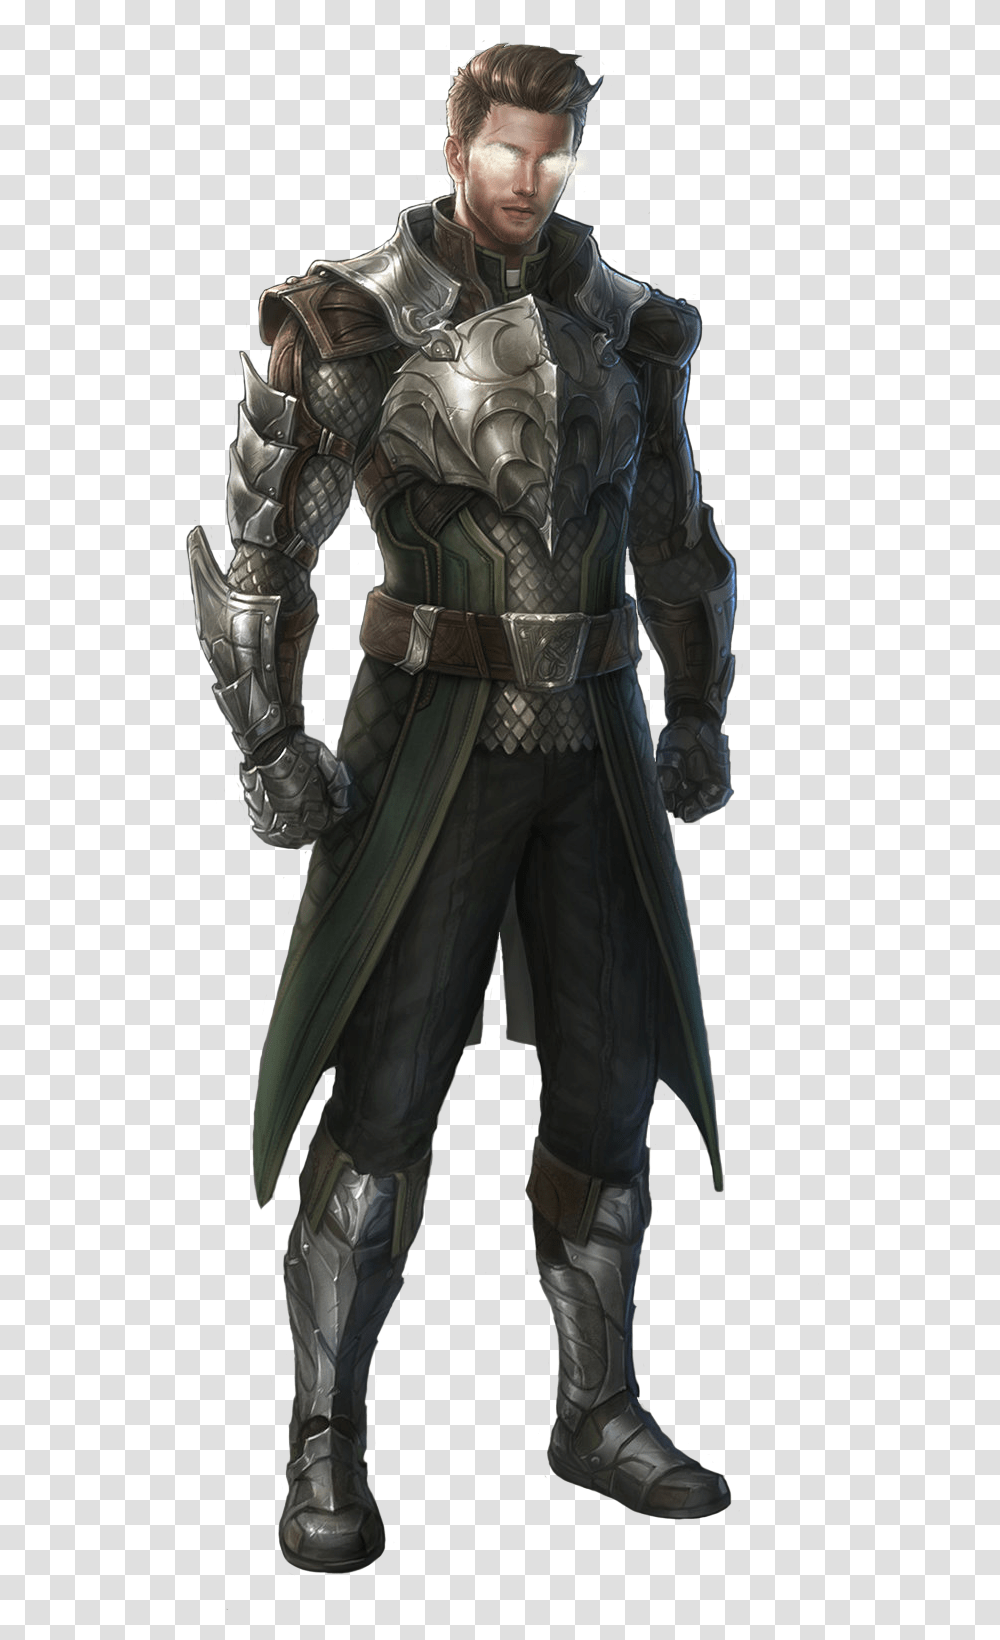 Castiel Assassin's Creed Egidio Troche, Person, Female, Portrait Transparent Png